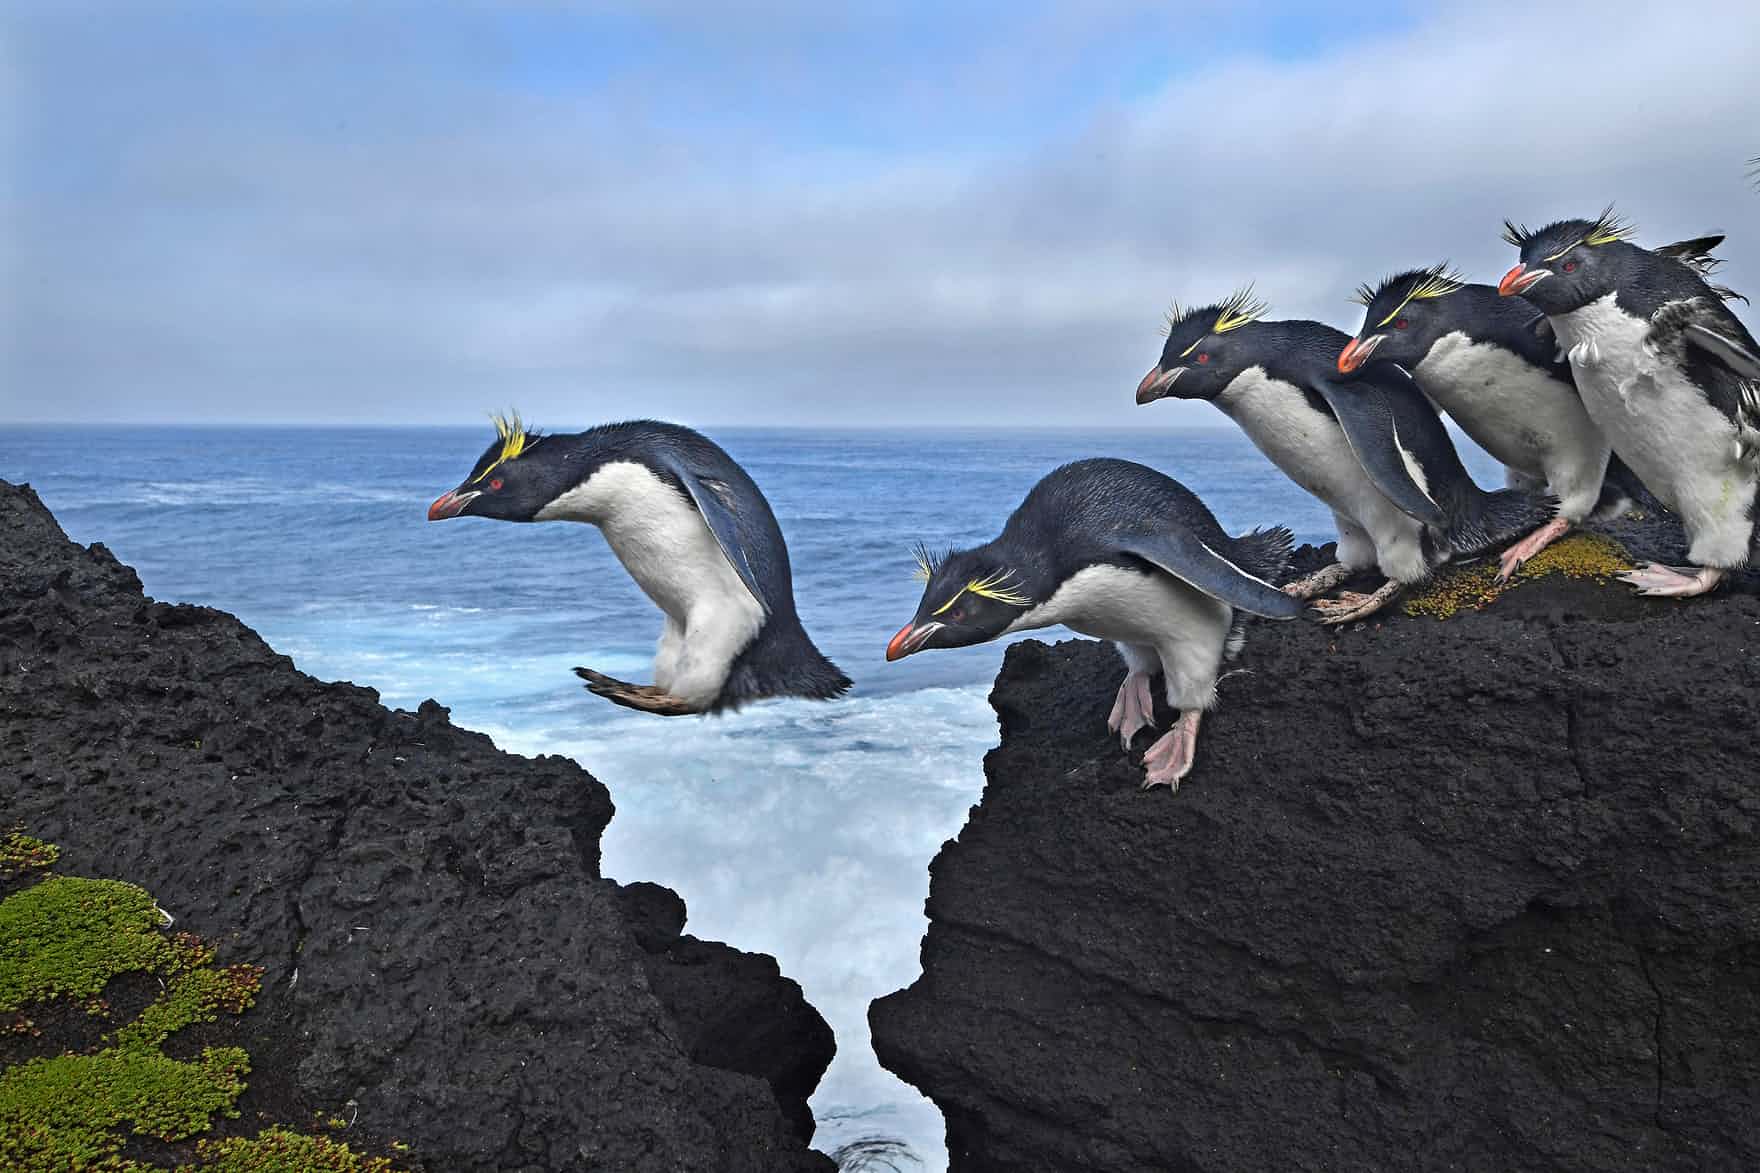 “Kayalardan karşıya atlayan penguenler”